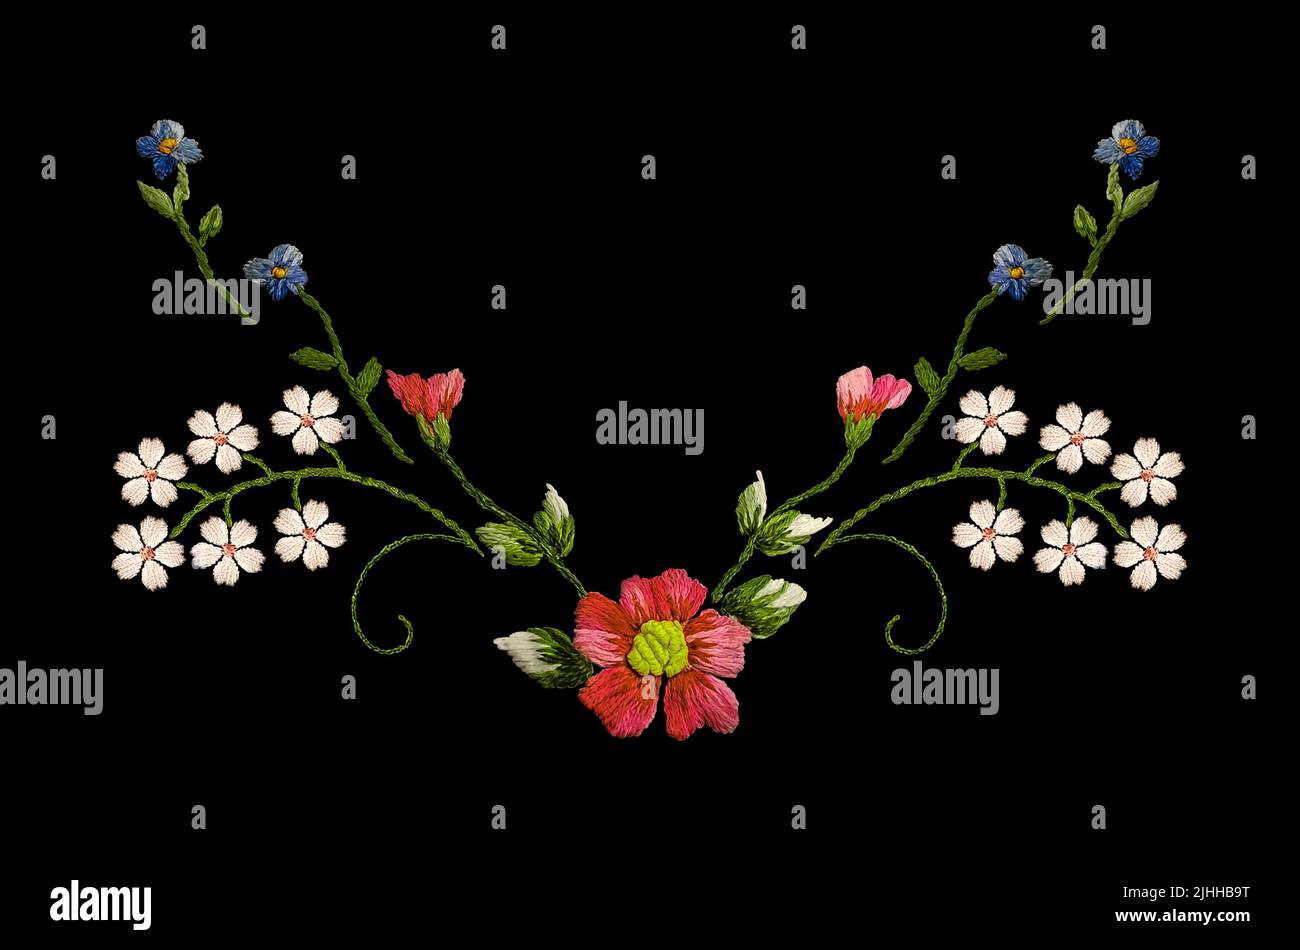 Eckstickmuster aus Wildblumen mit blauen Blüten an den Ästen, weißen Blüten und einer rosa Blume mit Knospen in der Mitte auf einem schwarzen Rückengr Stockfoto